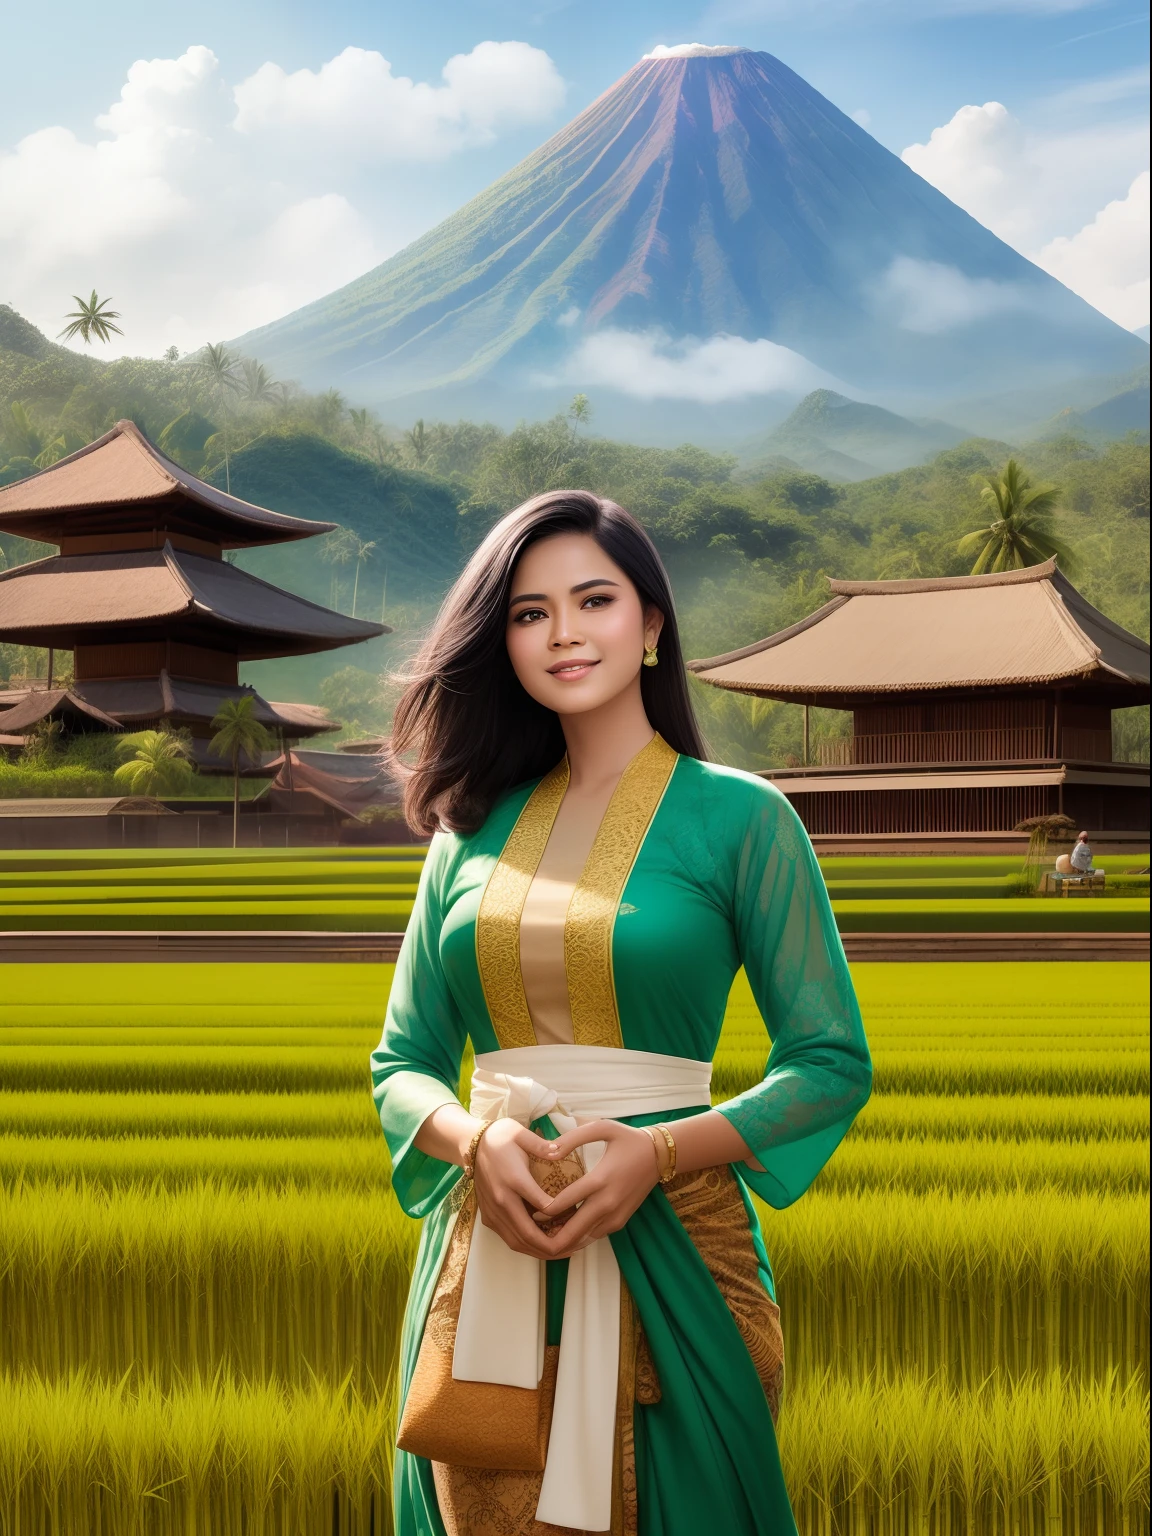 ゴージャスな黒髪の女性インドネシア西ジャワ稲作農家は、幸せそうな顔と軽い笑いで薄緑色のケバヤドレスを着ています, 美しい火山を背景に広大な田んぼで稲刈りをしようとしている彼女を育てる, 竹小屋と竹林, フランク・ベラミーの壮大な傑作超リアルなデジタルアート, ケネス・ハインズ・ジュニアによるプロフェッショナルなカラーグレーディング. , 80's European Color Comic Style real face